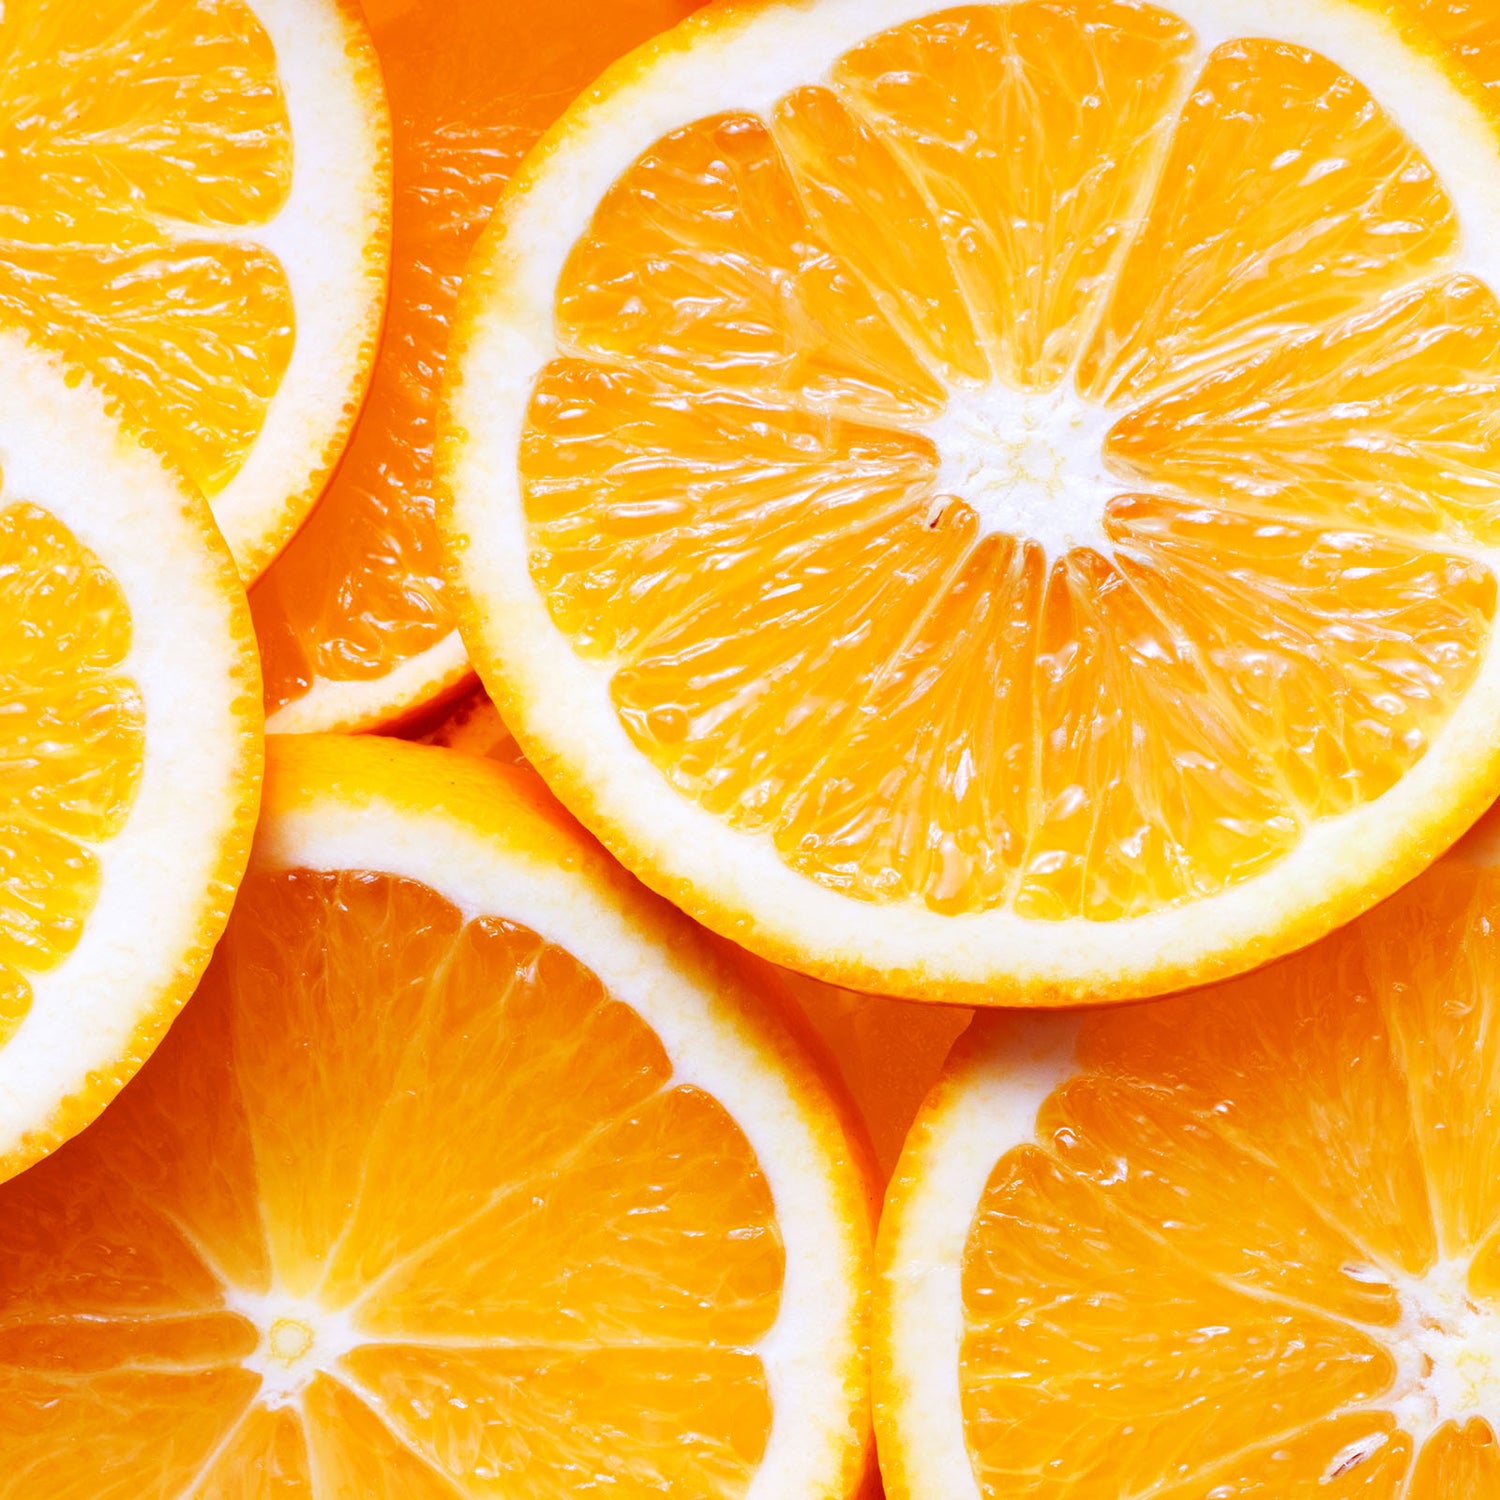 Citrus sinensis (sweet orange) essential oil